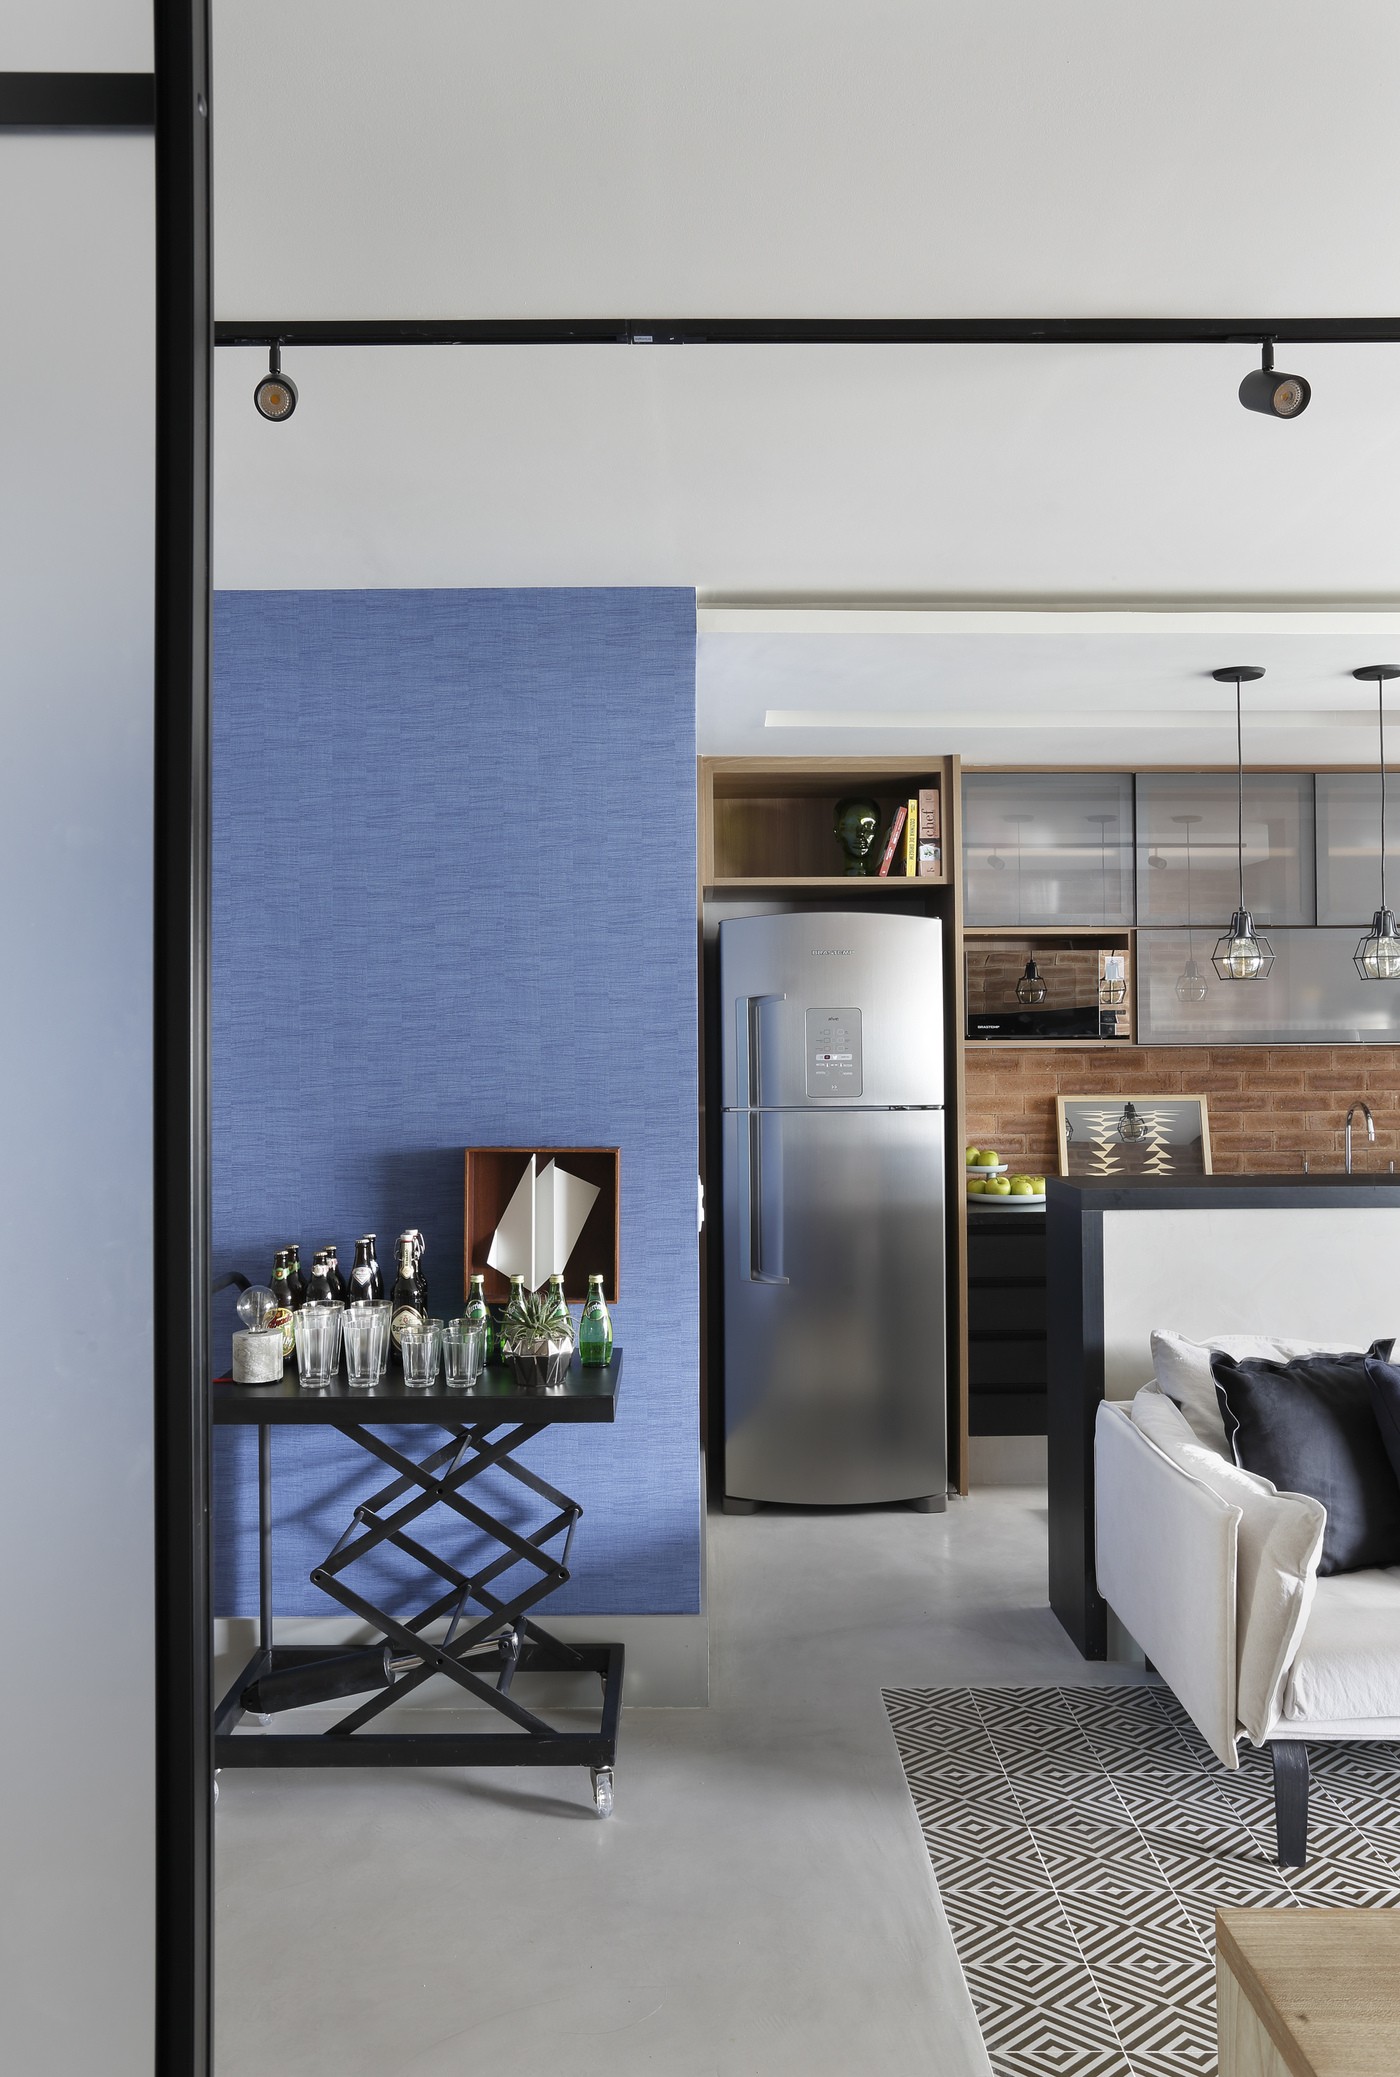 Décor do dia: papel de parede azul e tijolinhos são os destaques desta cozinha aberta (Foto: Denilson Machado/MCA Estúdio)